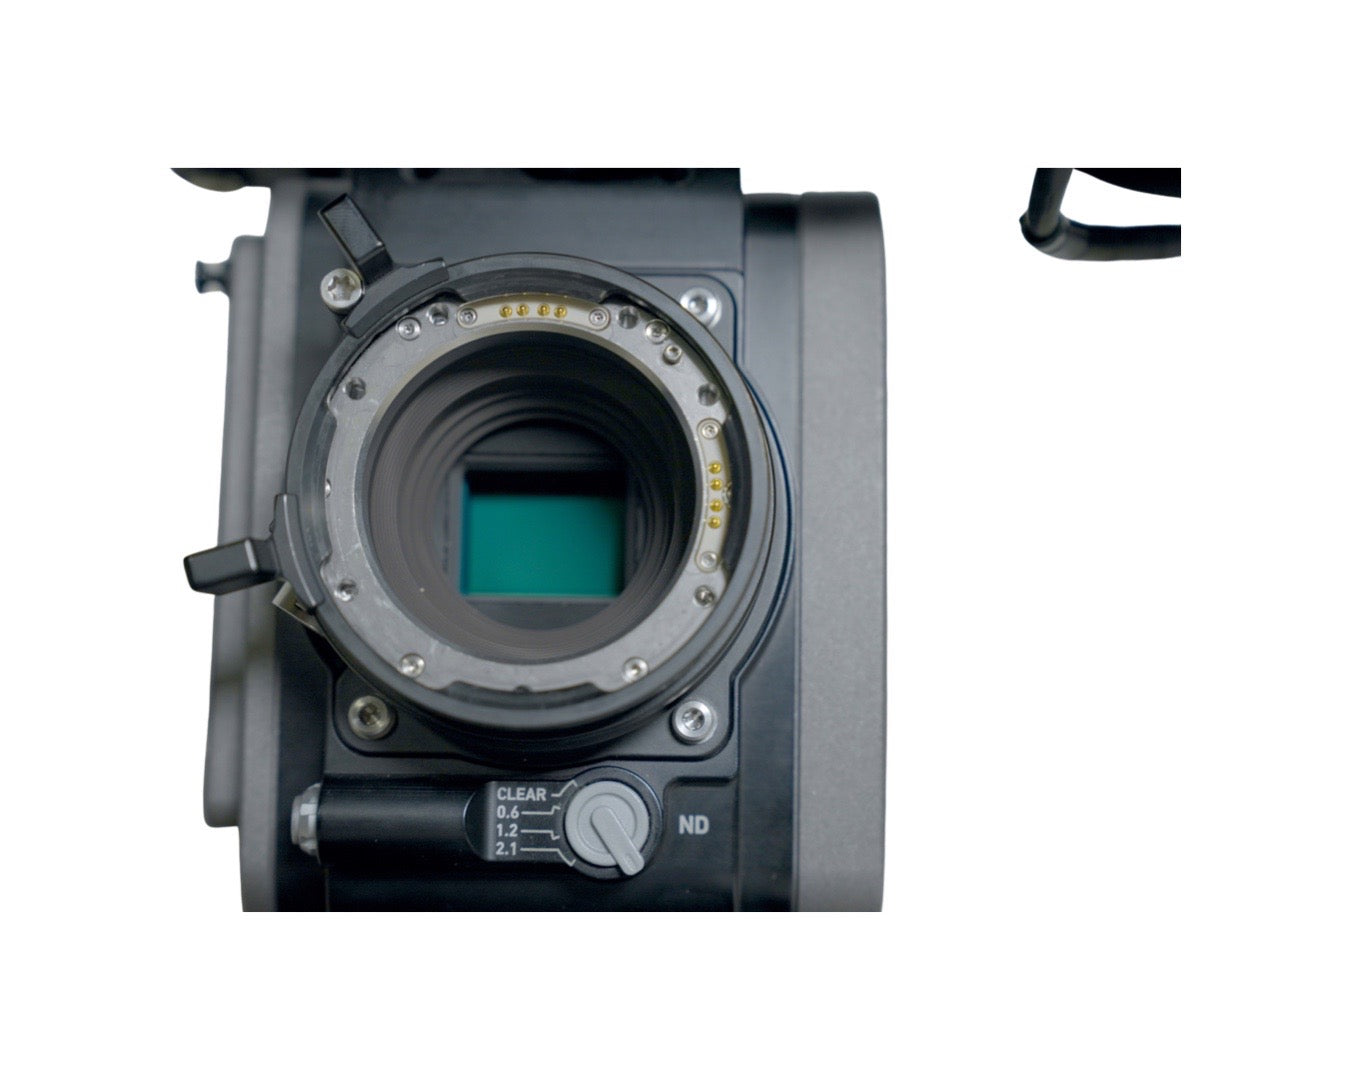 Used ARRI AMIRA Camera with Premium License